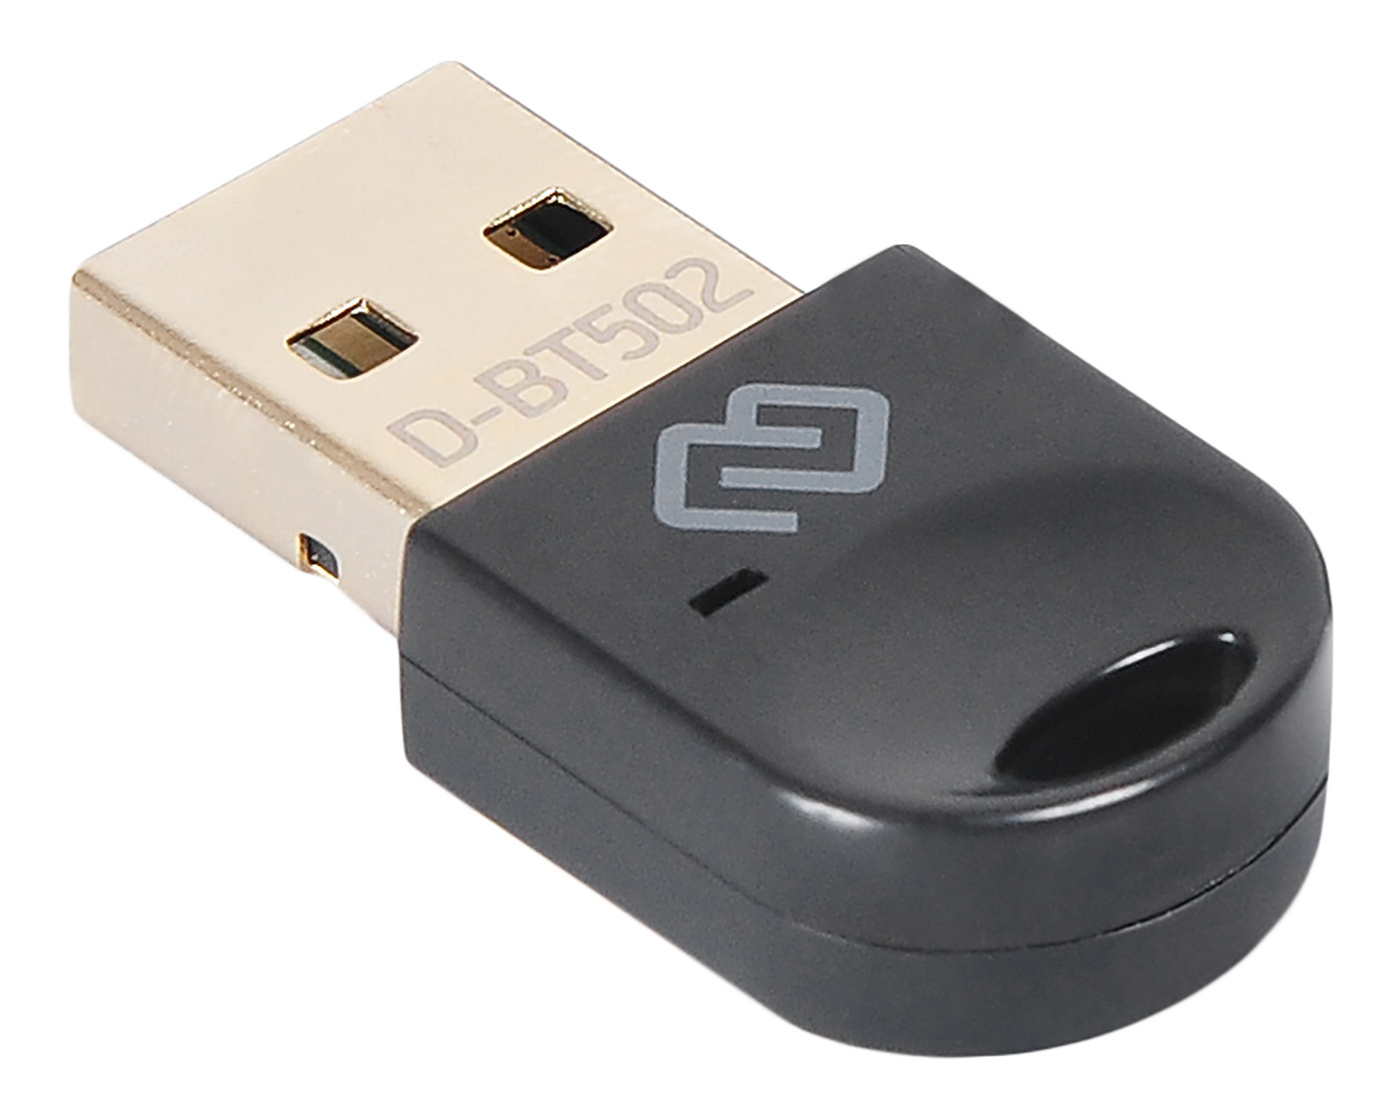 Адаптер USB Digma D-BT502